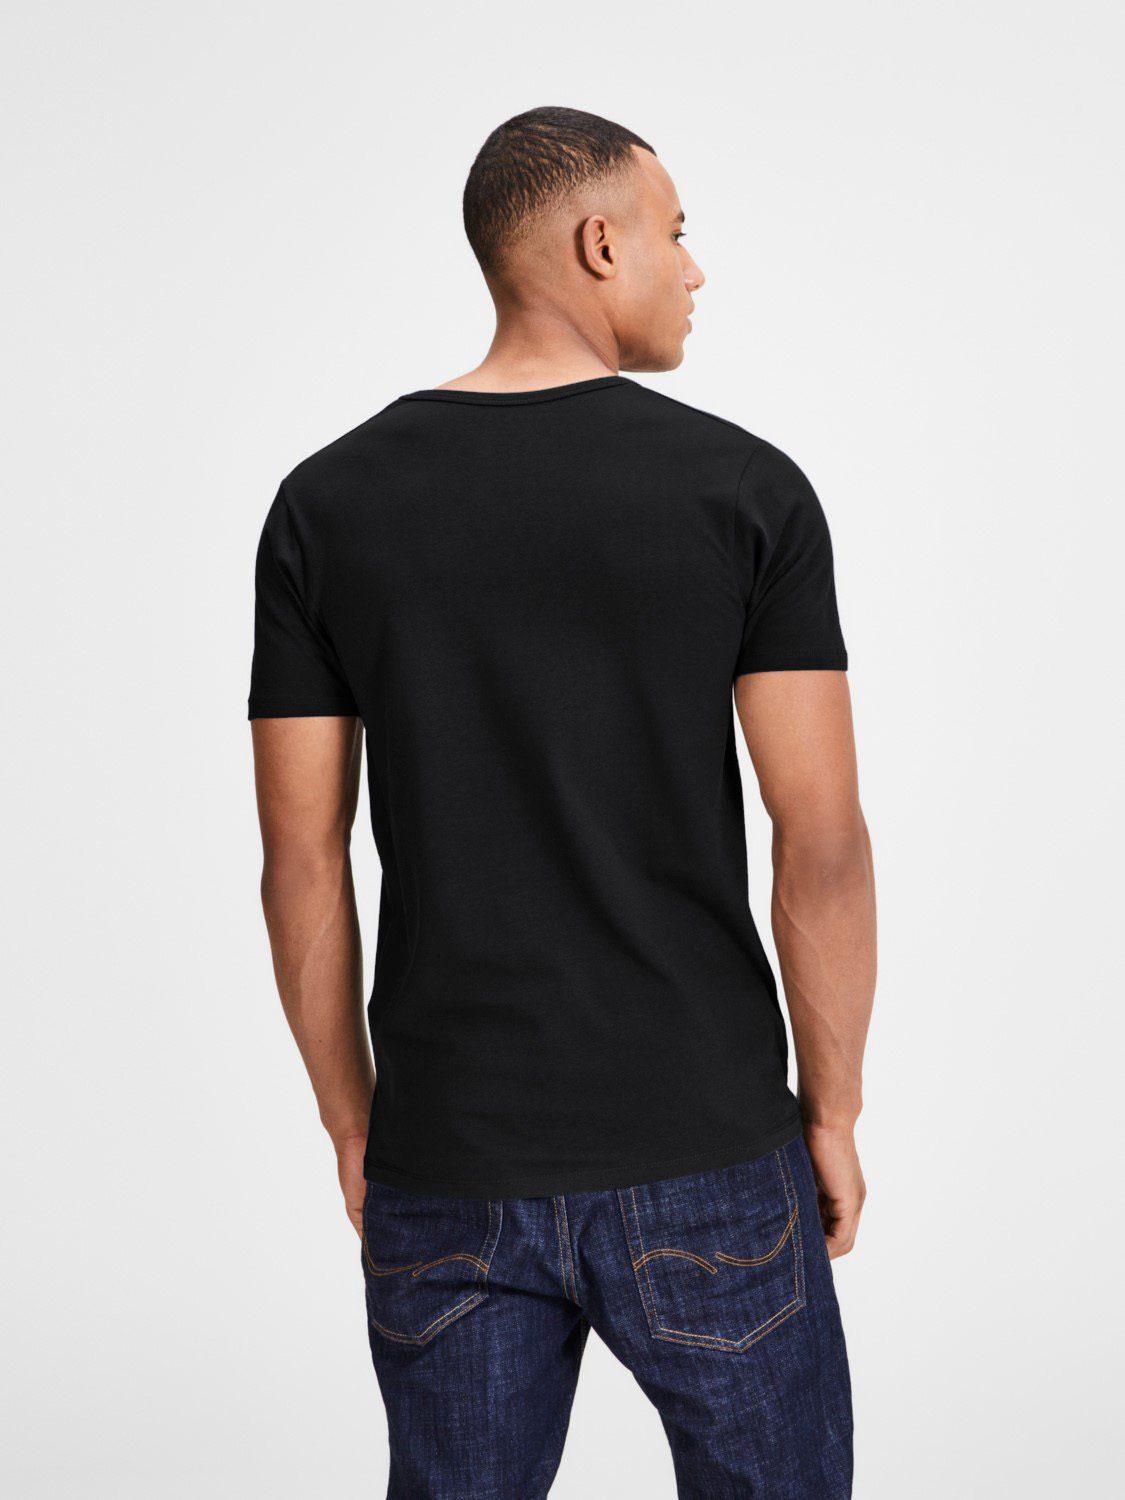 Jack & Jones T-Shirt Basic kurz (3-tlg., V-Neck (BL/BL/WH) nicht geschnitten, länger 2 zu Mix etwas 3er Pack)